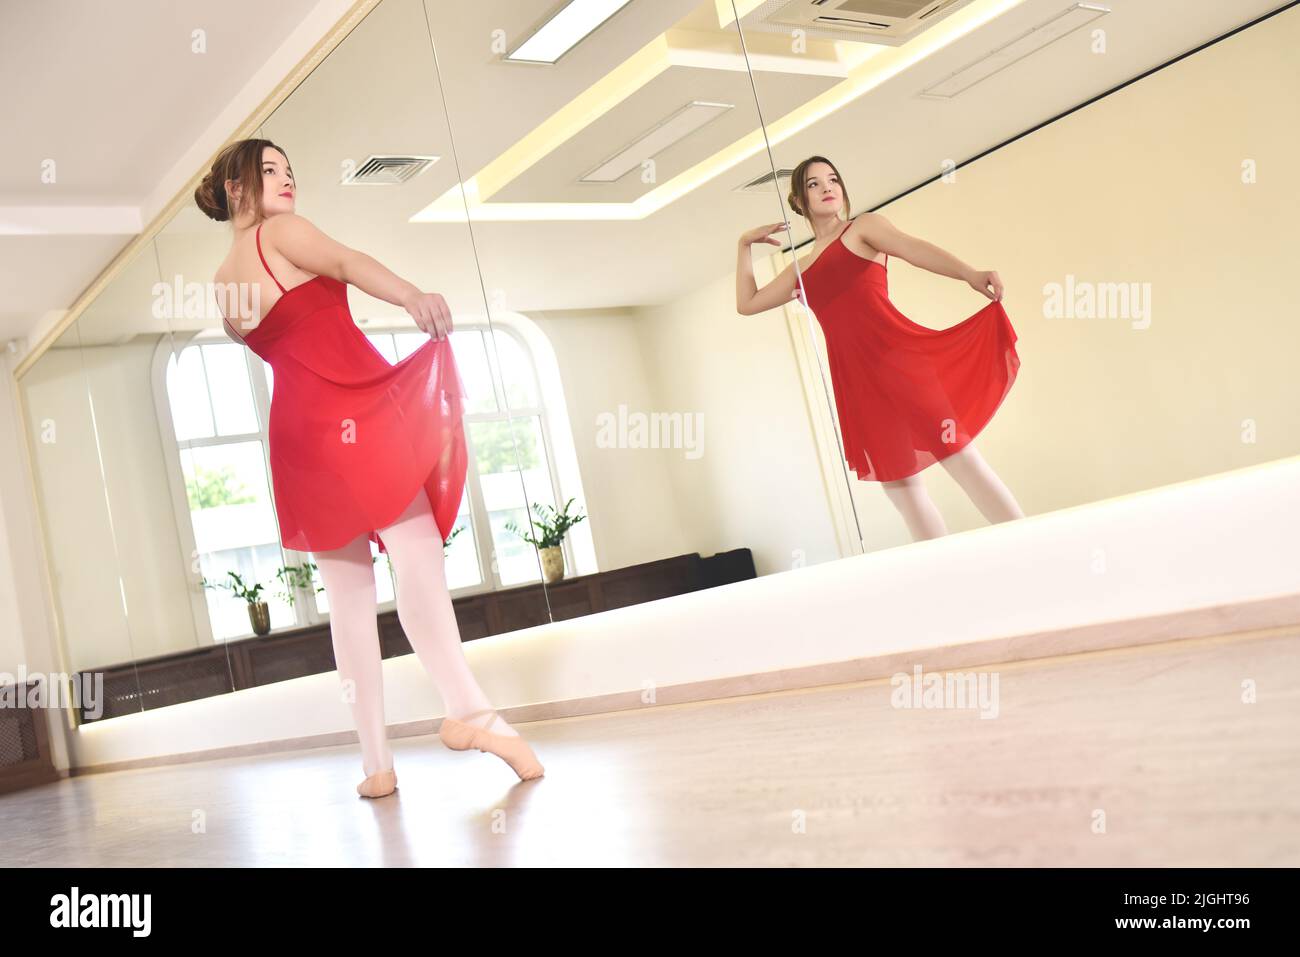 une jeune ballerine en robe rouge et des chaussures pointe effectuent des exercices dans un studio de danse Banque D'Images